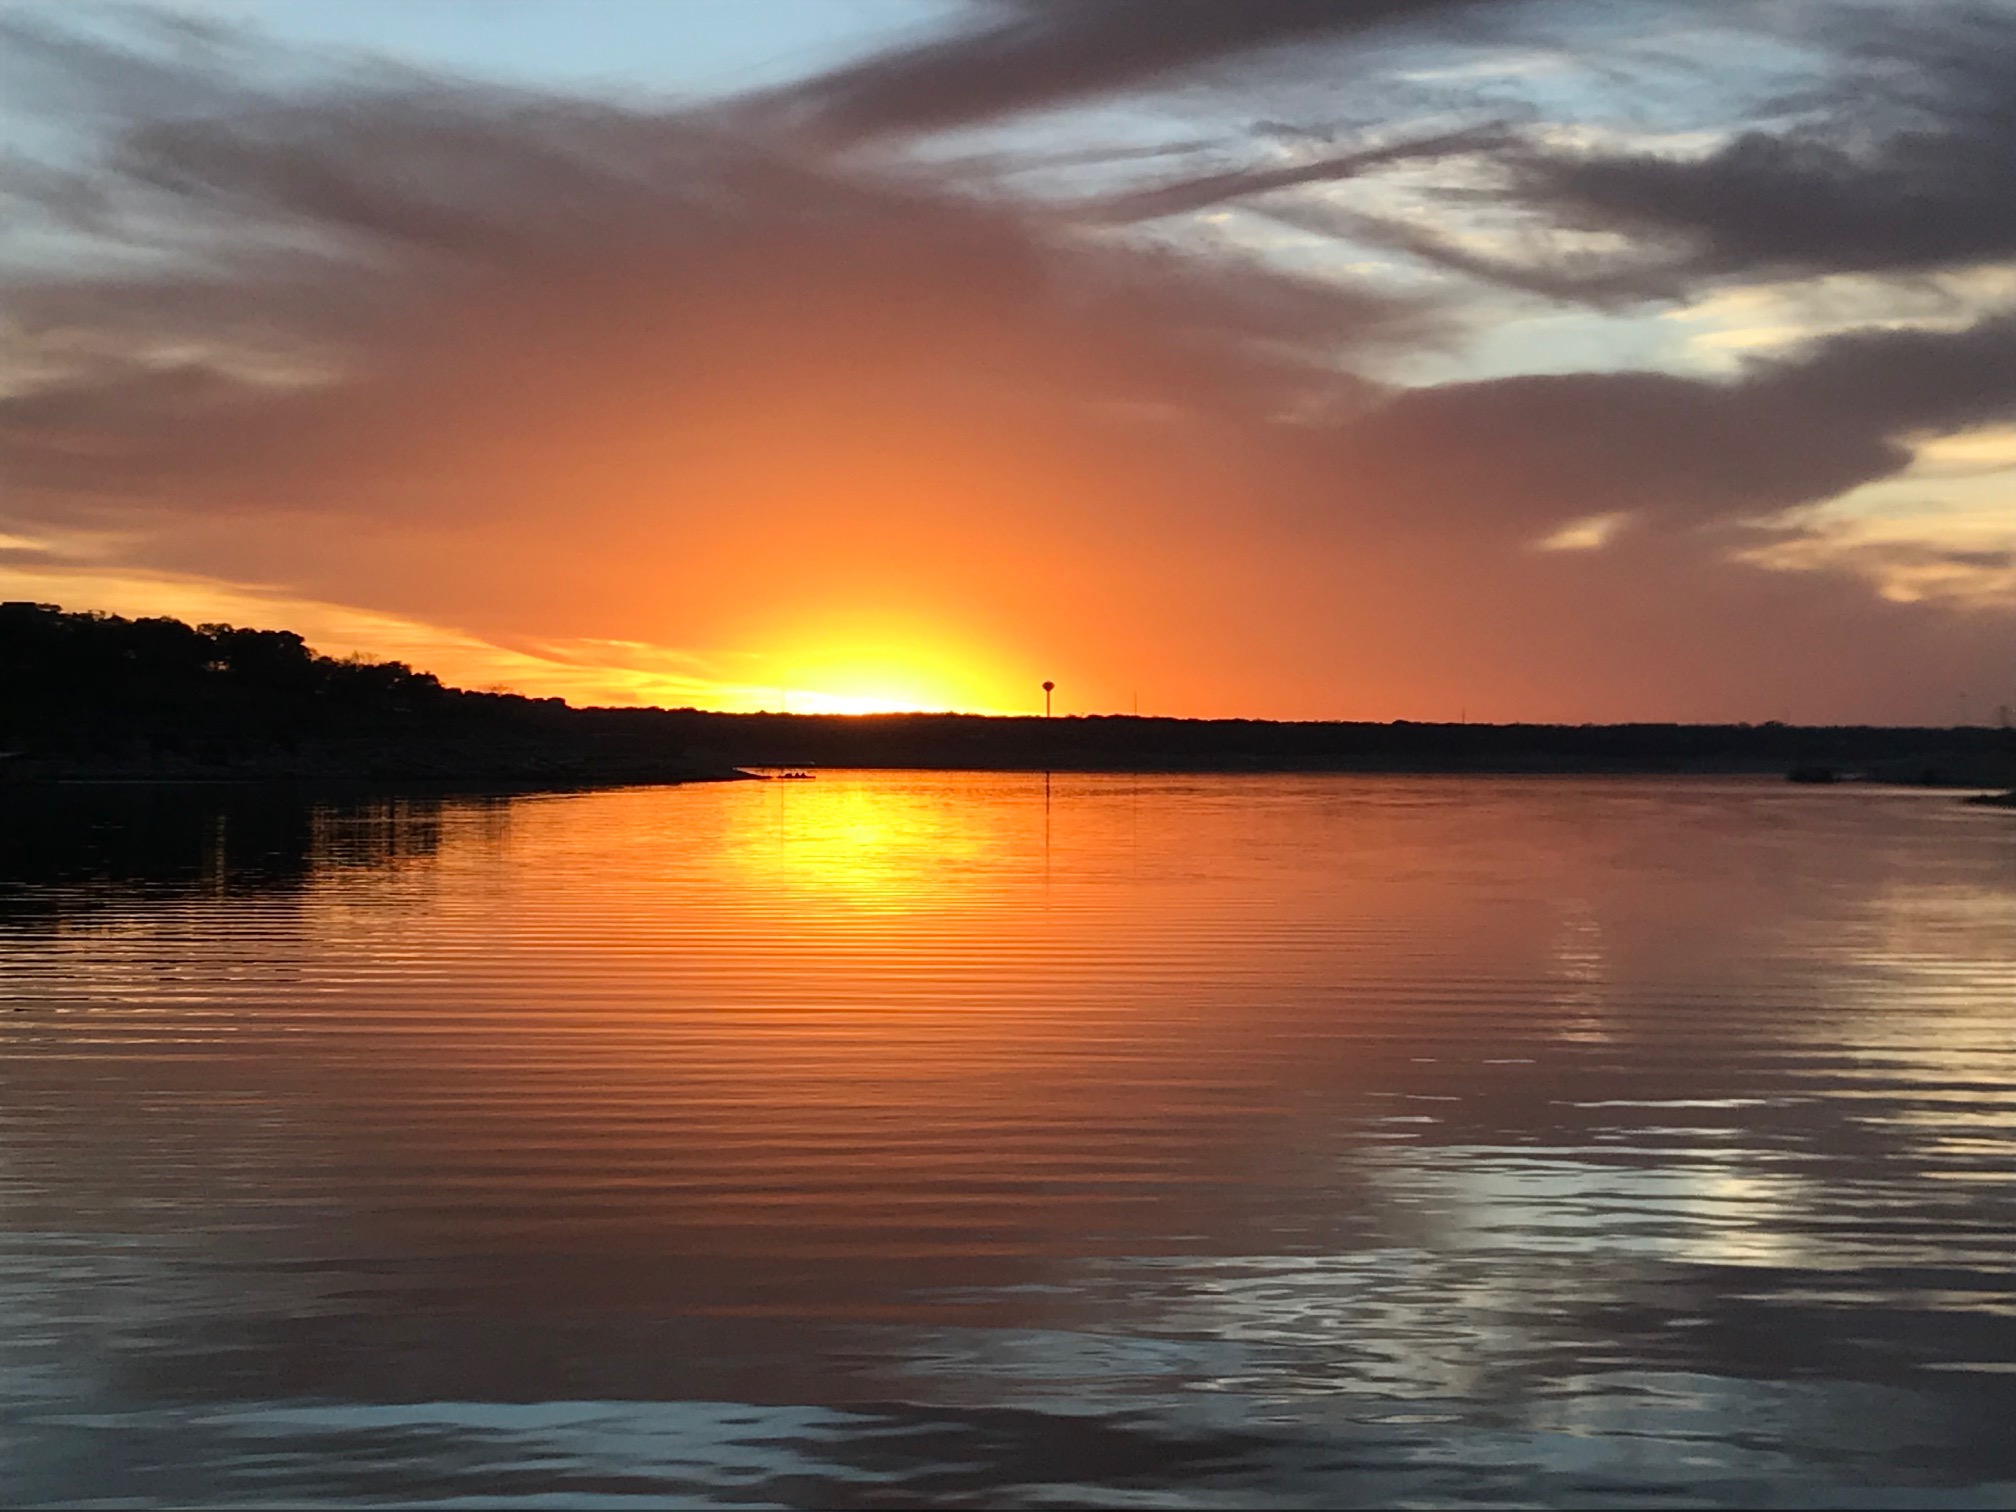 sunset on lake travis